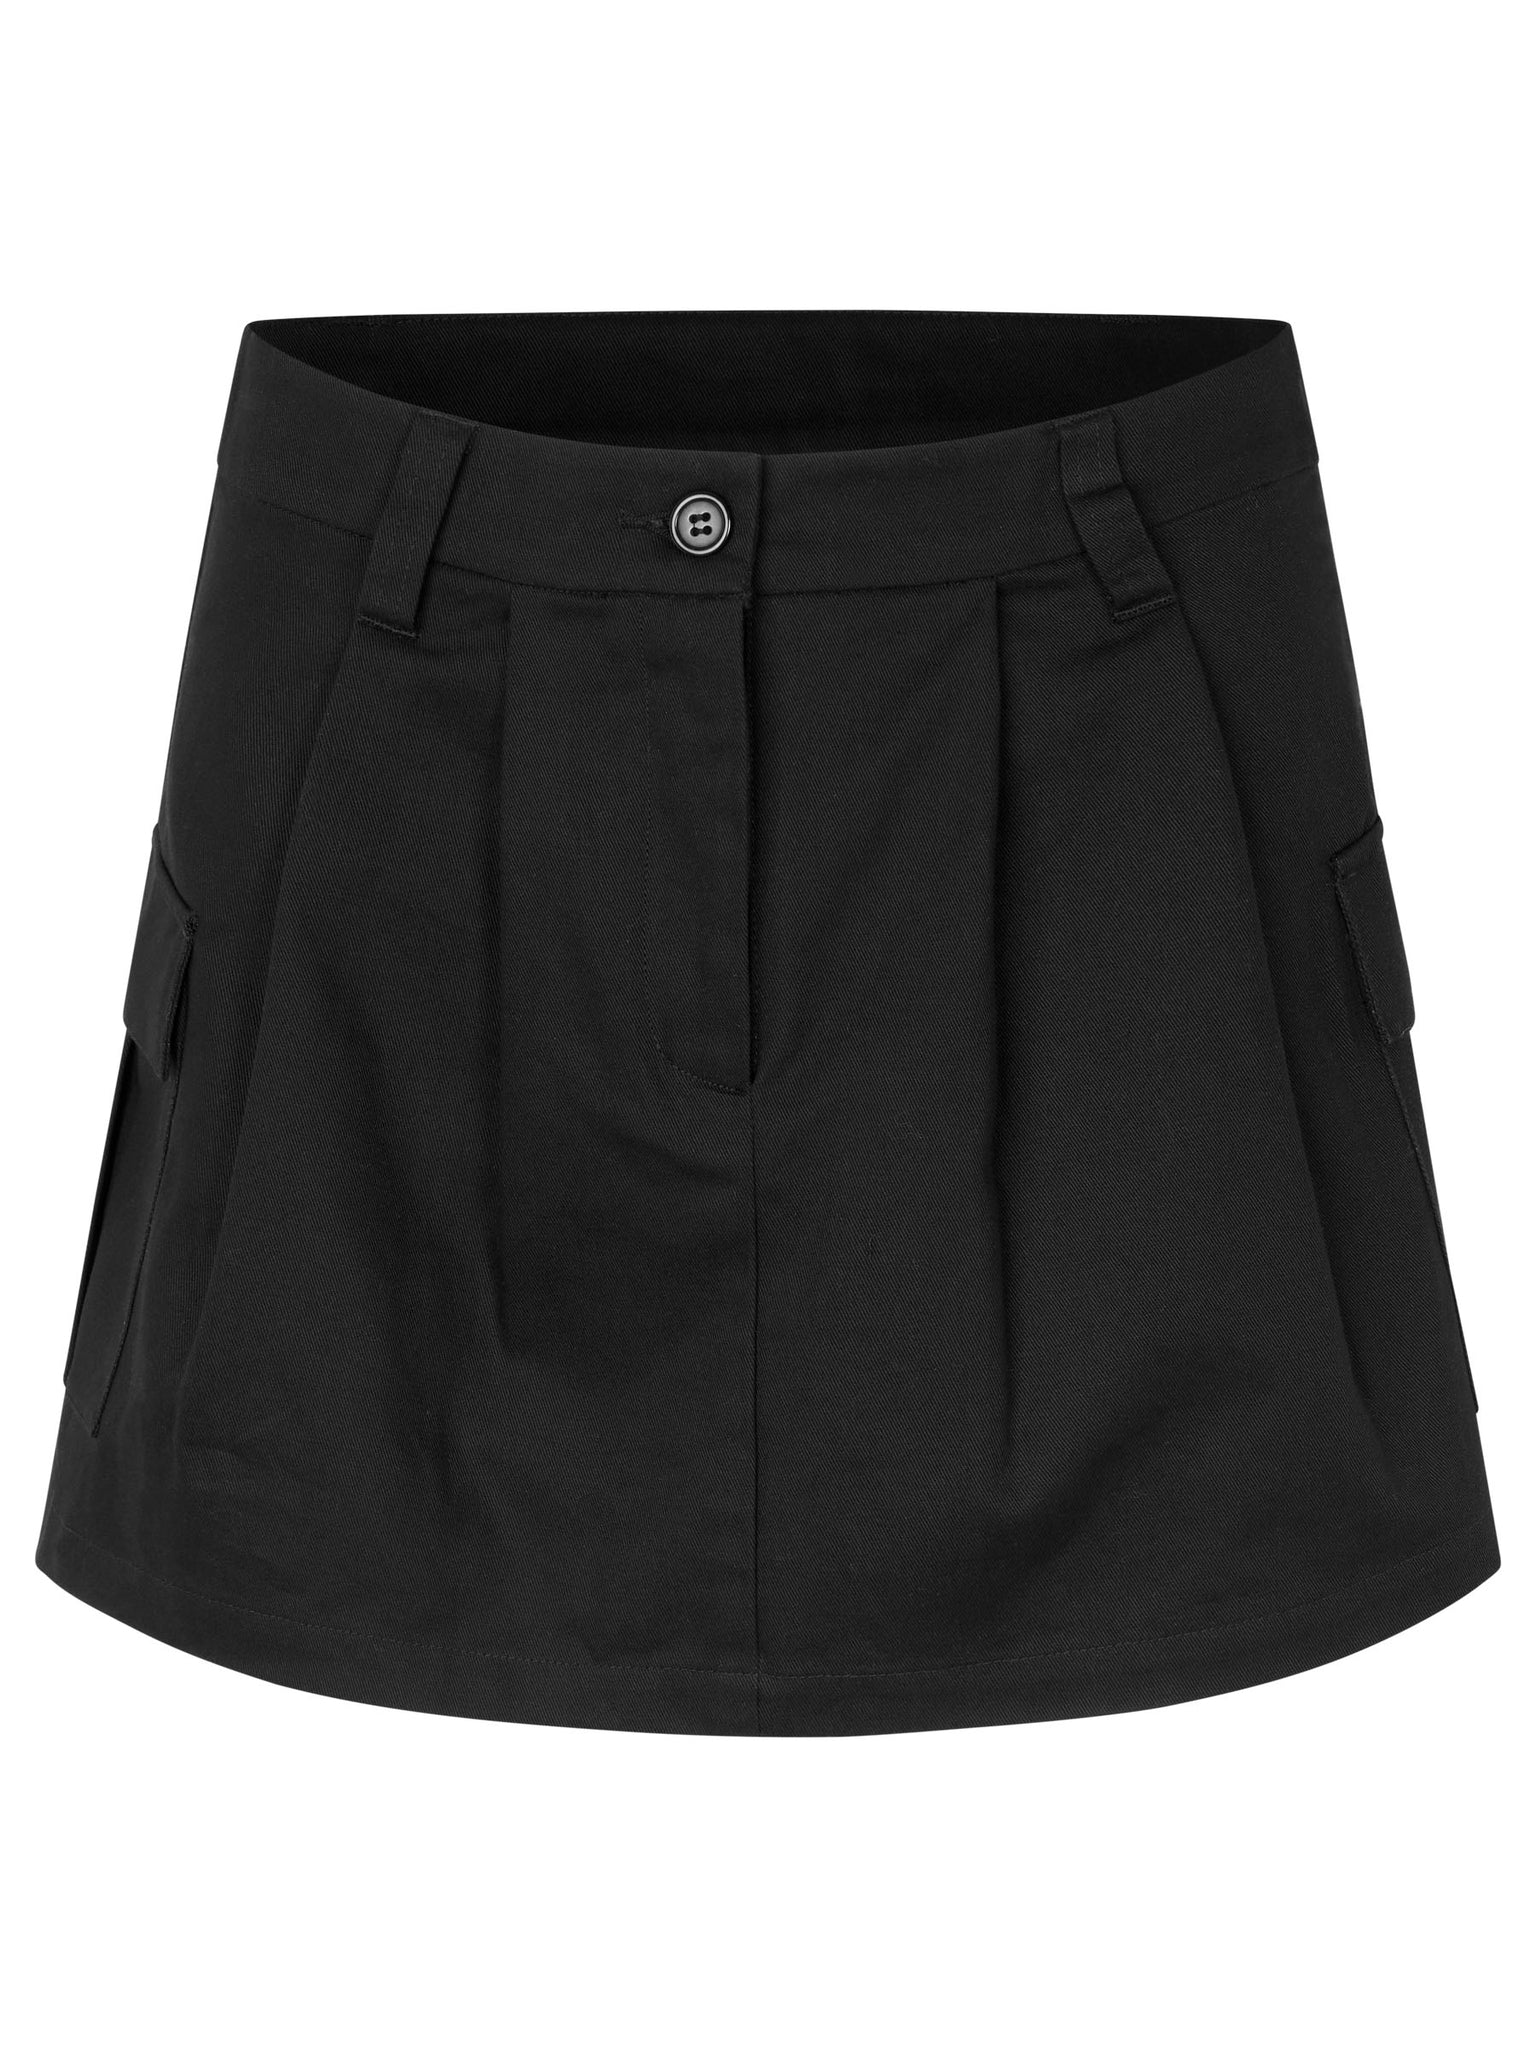 Cargo skirt for girls